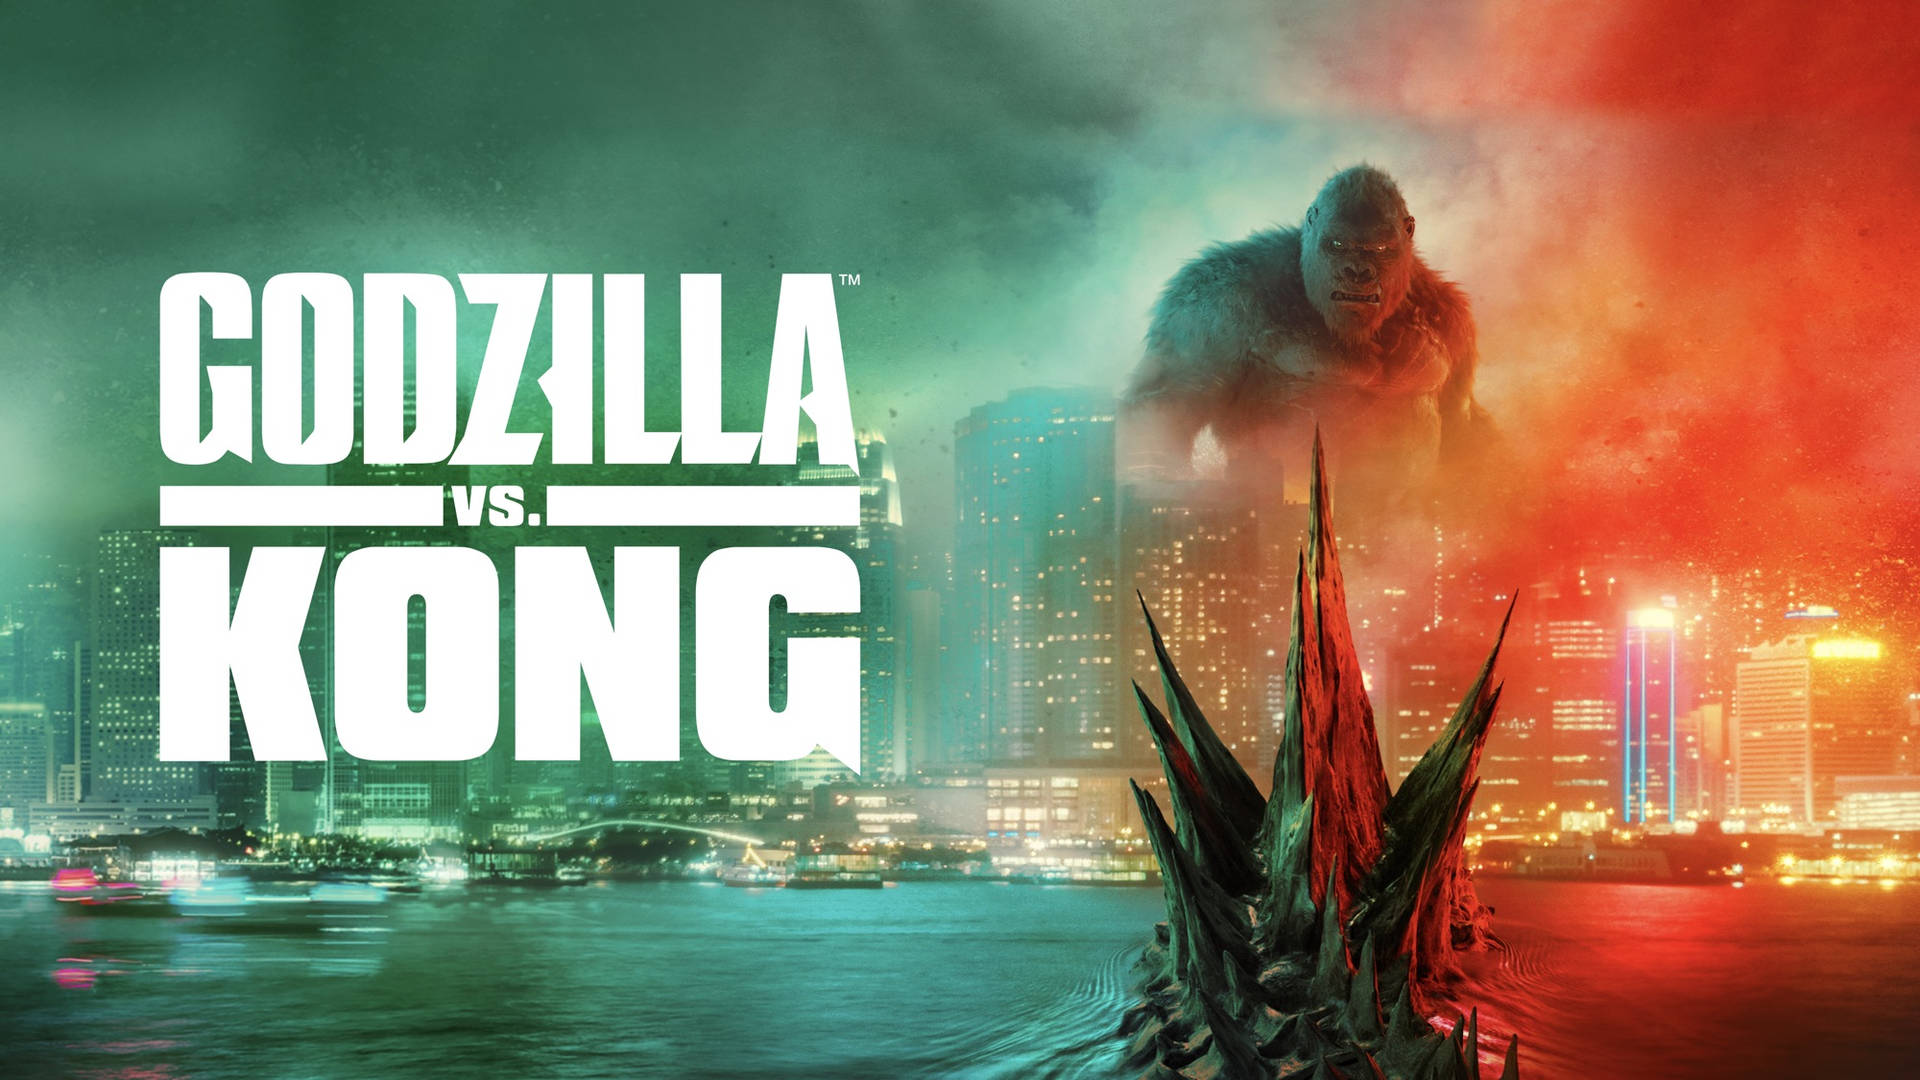 Godzillamot Kong - En Stad Med En Stor Staty Av Godzilla. Wallpaper